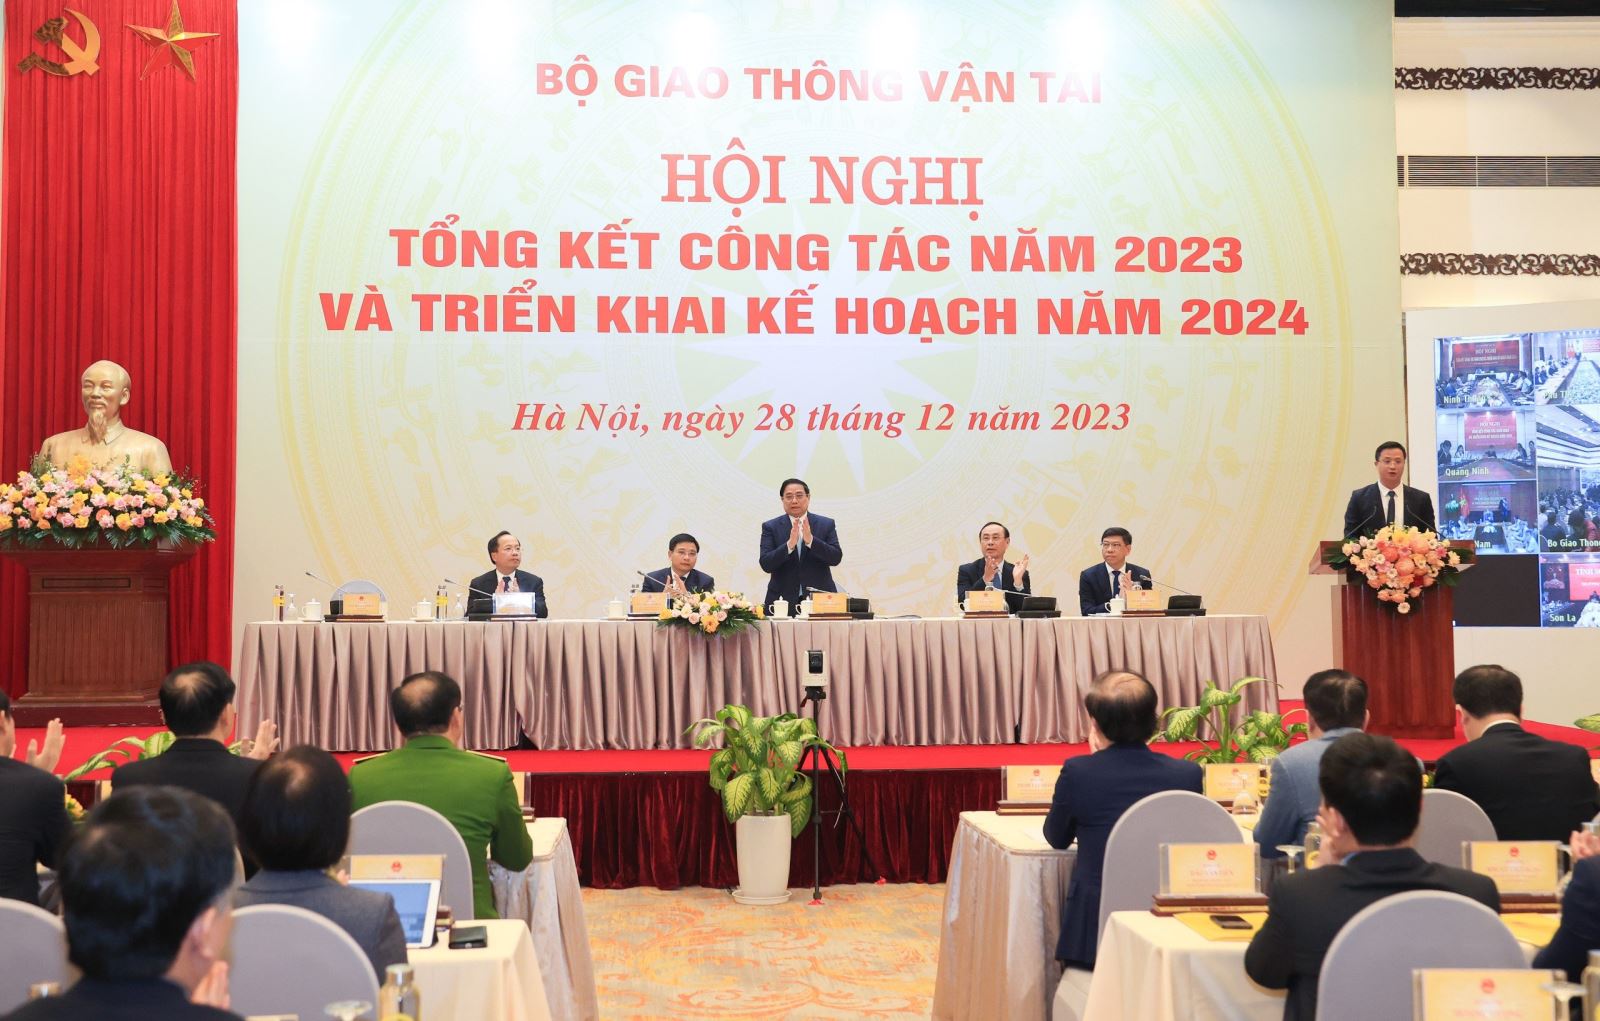 Thủ tướng Chính phủ Phạm Minh Chính dự và chỉ đạo Hội nghị tổng kết công tác năm 2023 và triển khai kế hoạch năm 2024 của Bộ GTVT, sáng nay 28/12/2023 tại Hà Nội